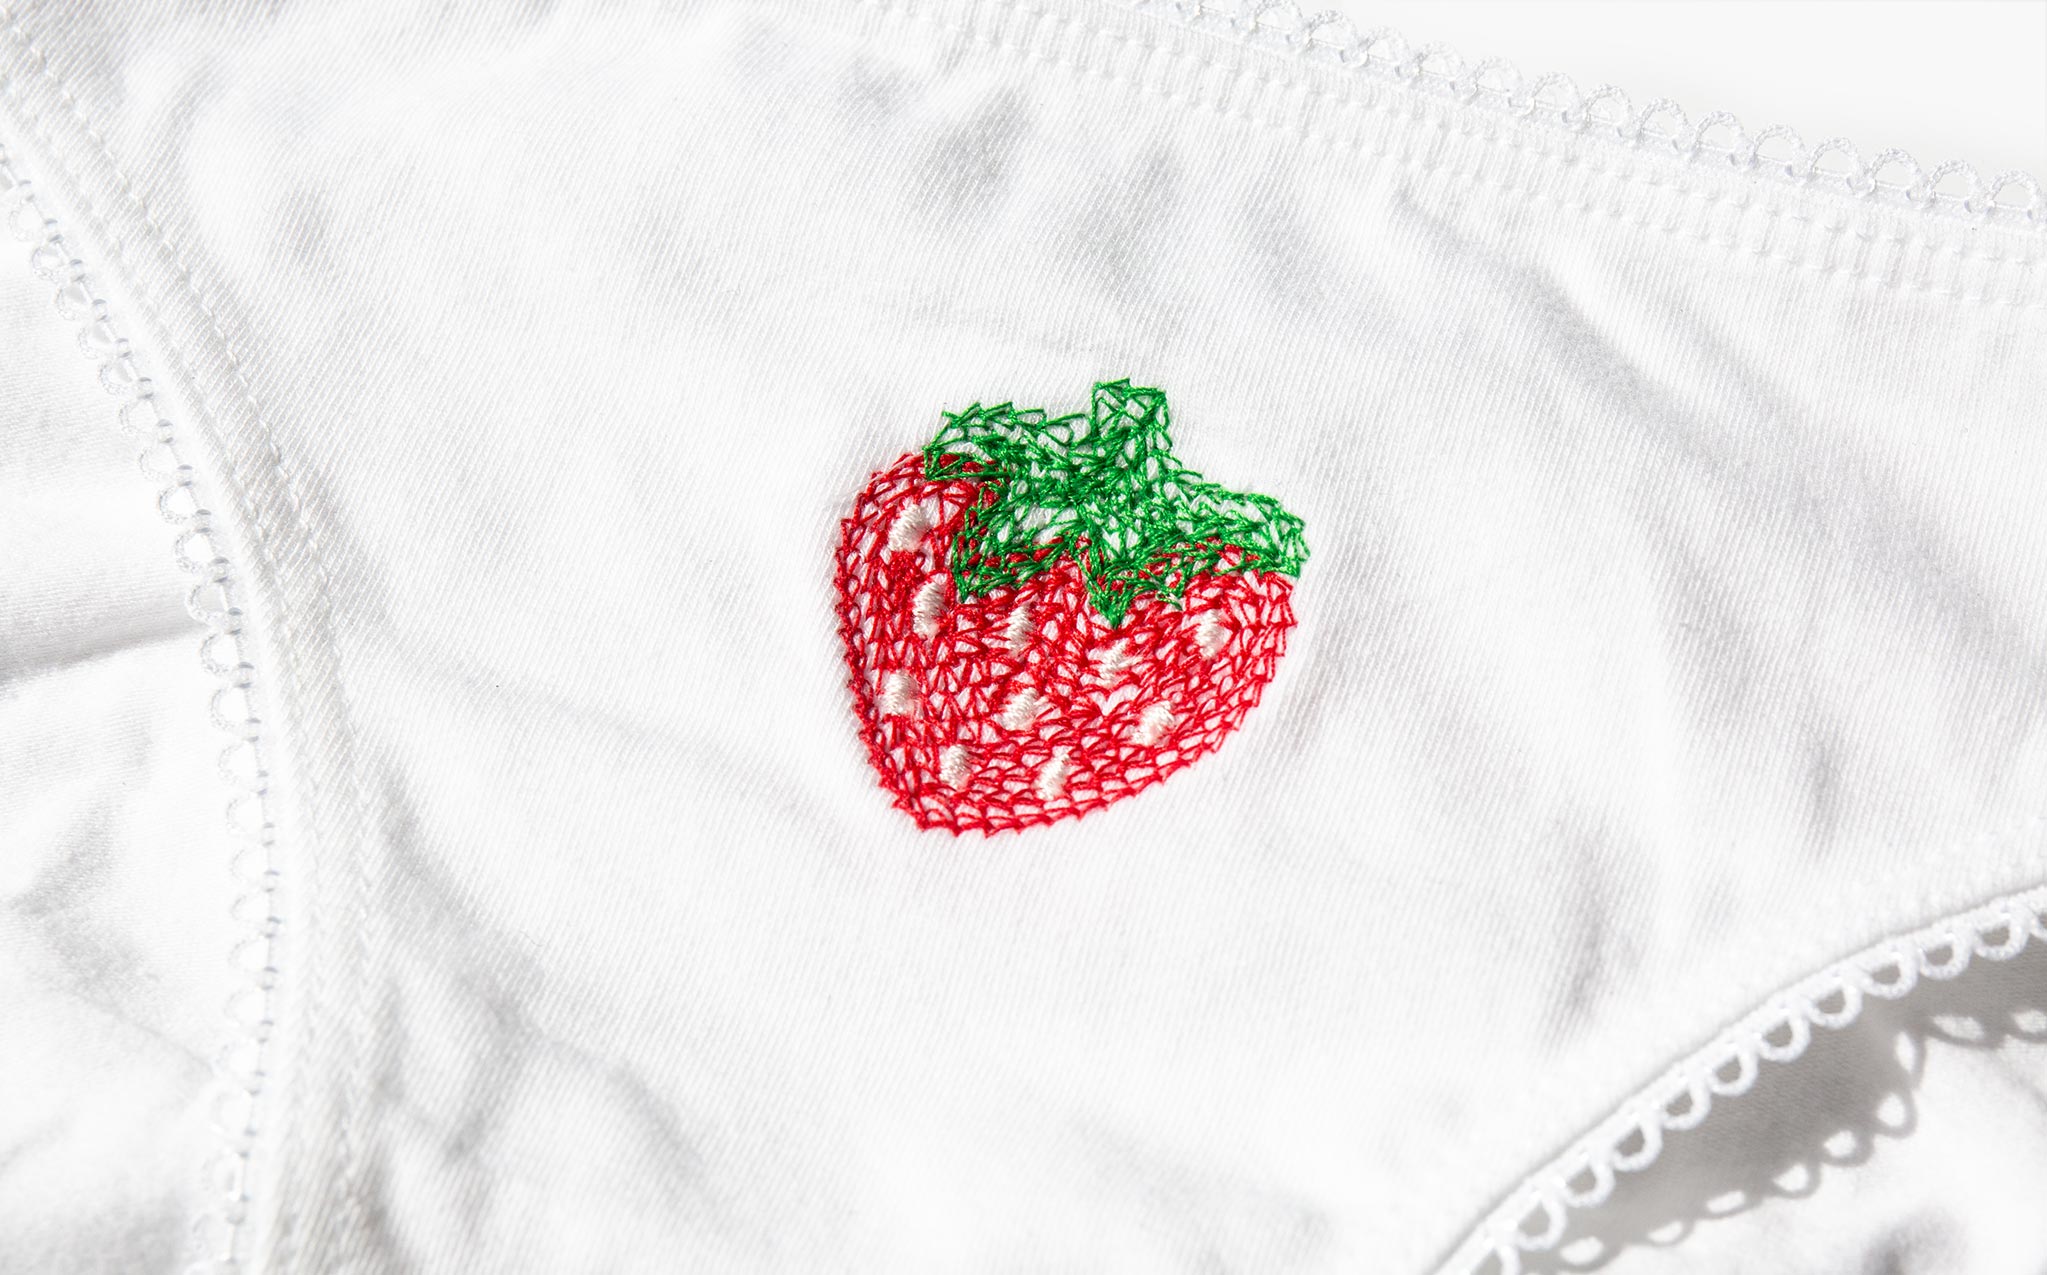 Poppy Undies Embroidered Strawberry